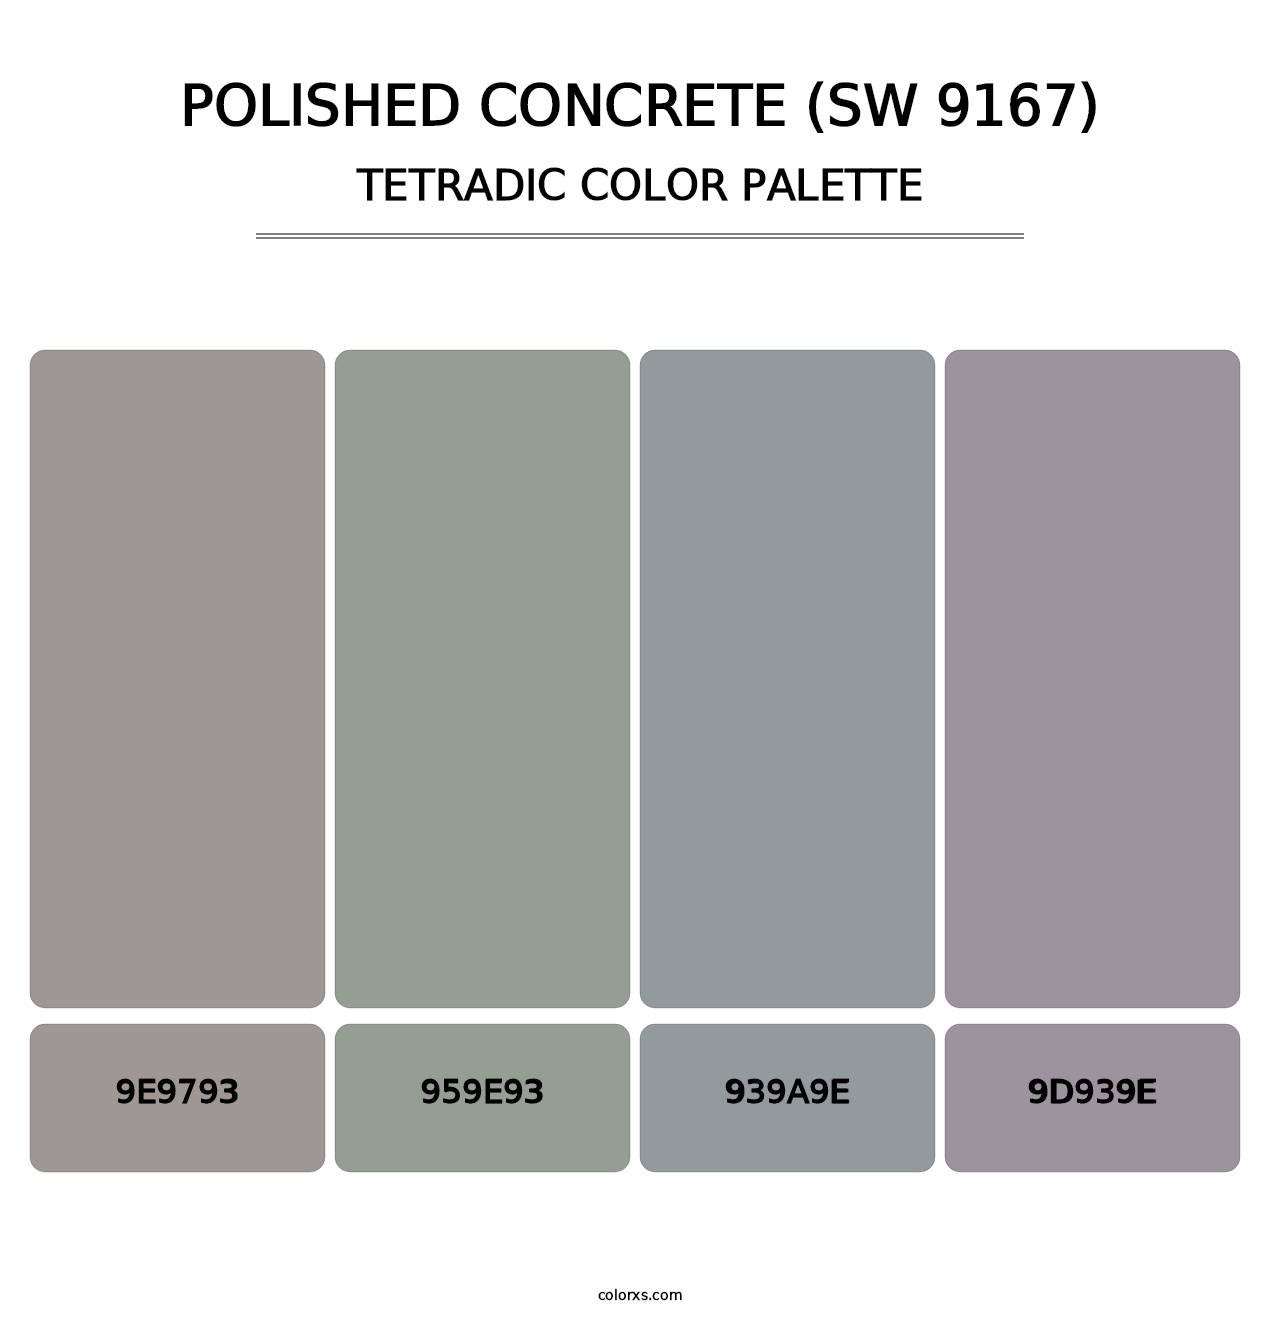 Polished Concrete (SW 9167) - Tetradic Color Palette